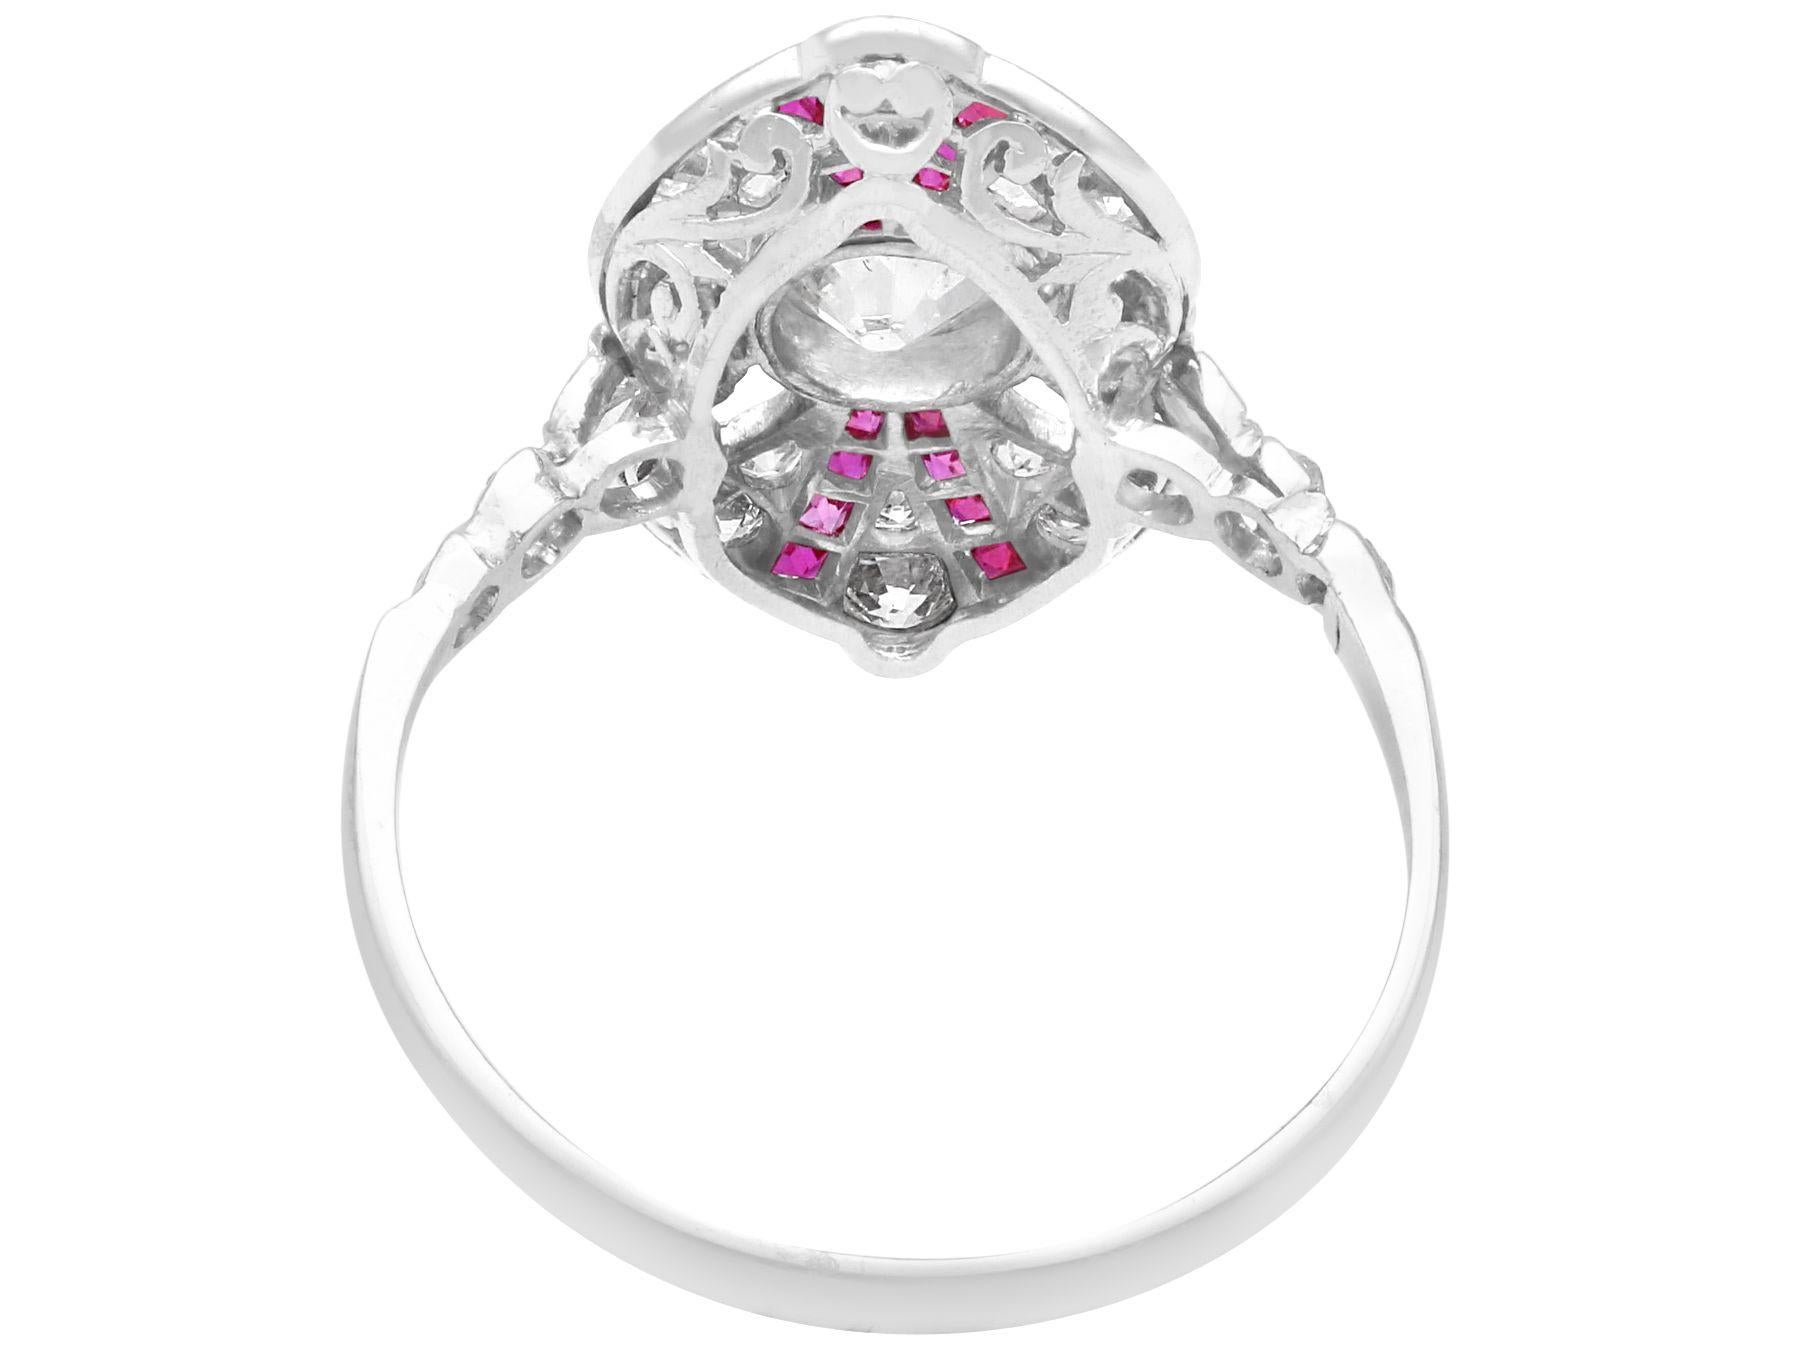 1.1 carat oval diamond ring